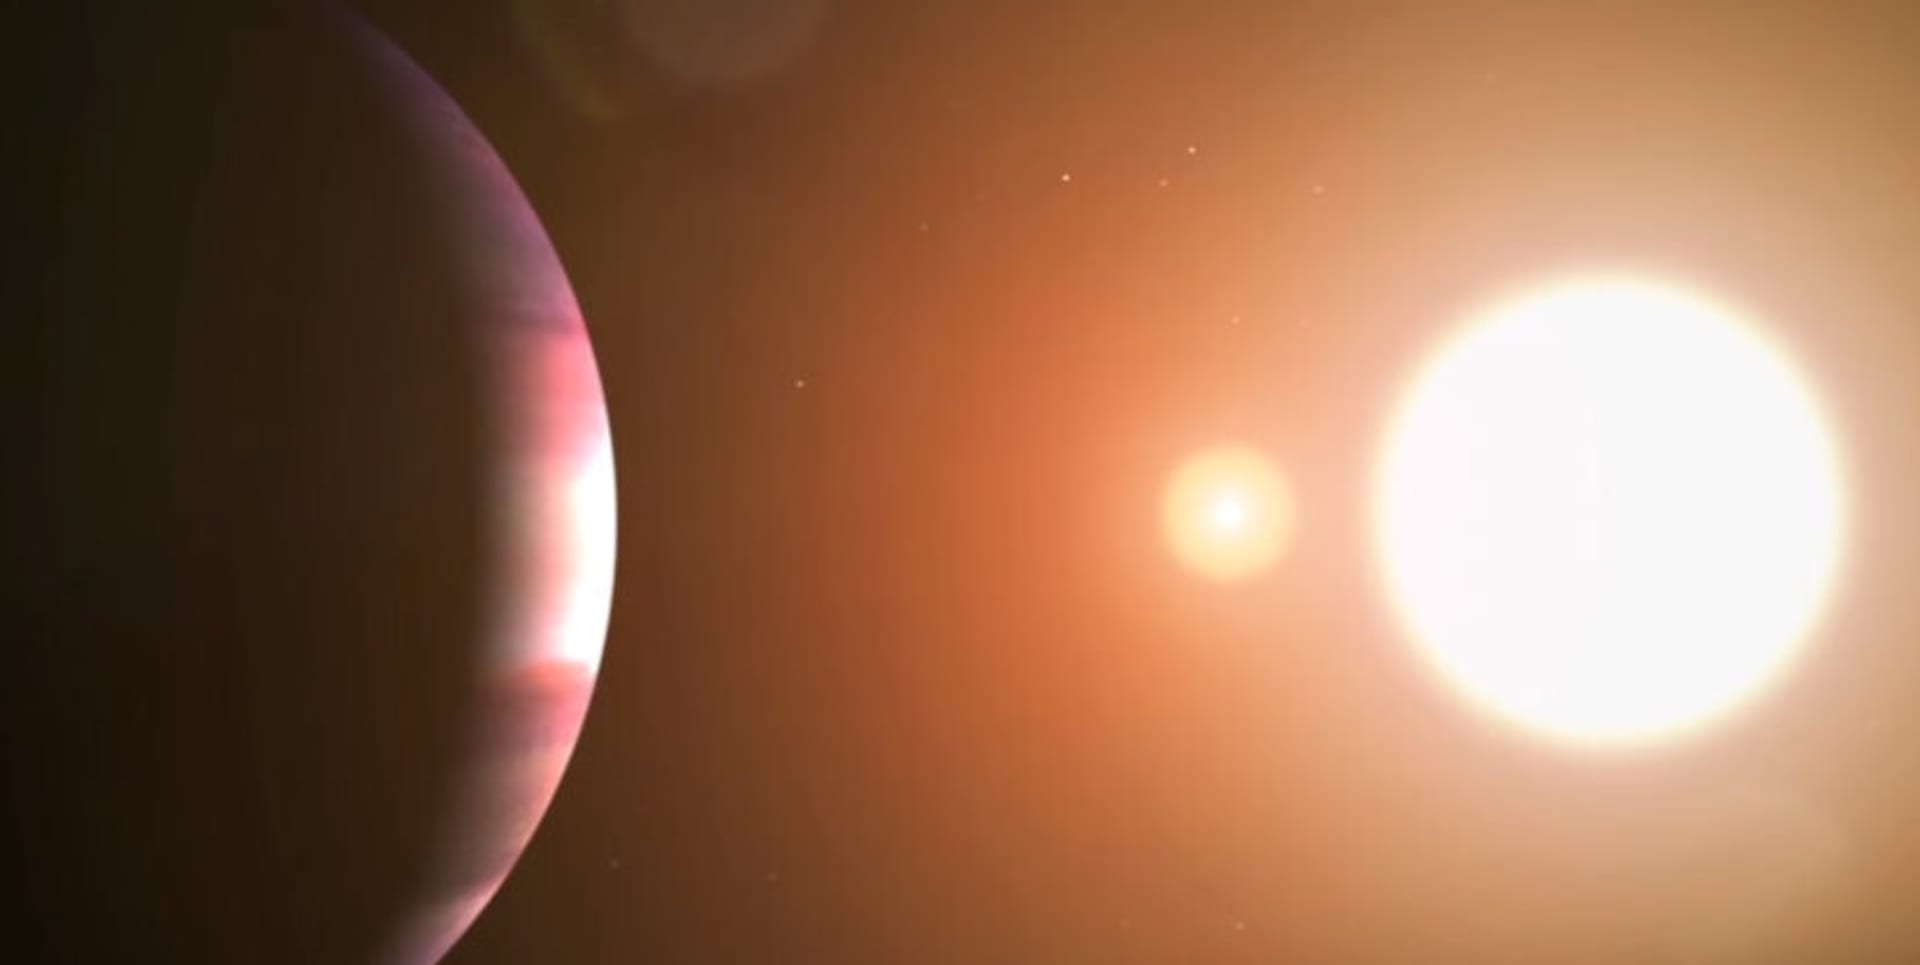 Vizuály planety TOI 1338 b jsou zatím sice dost nejasné, ale její objev je vážně fascinující.